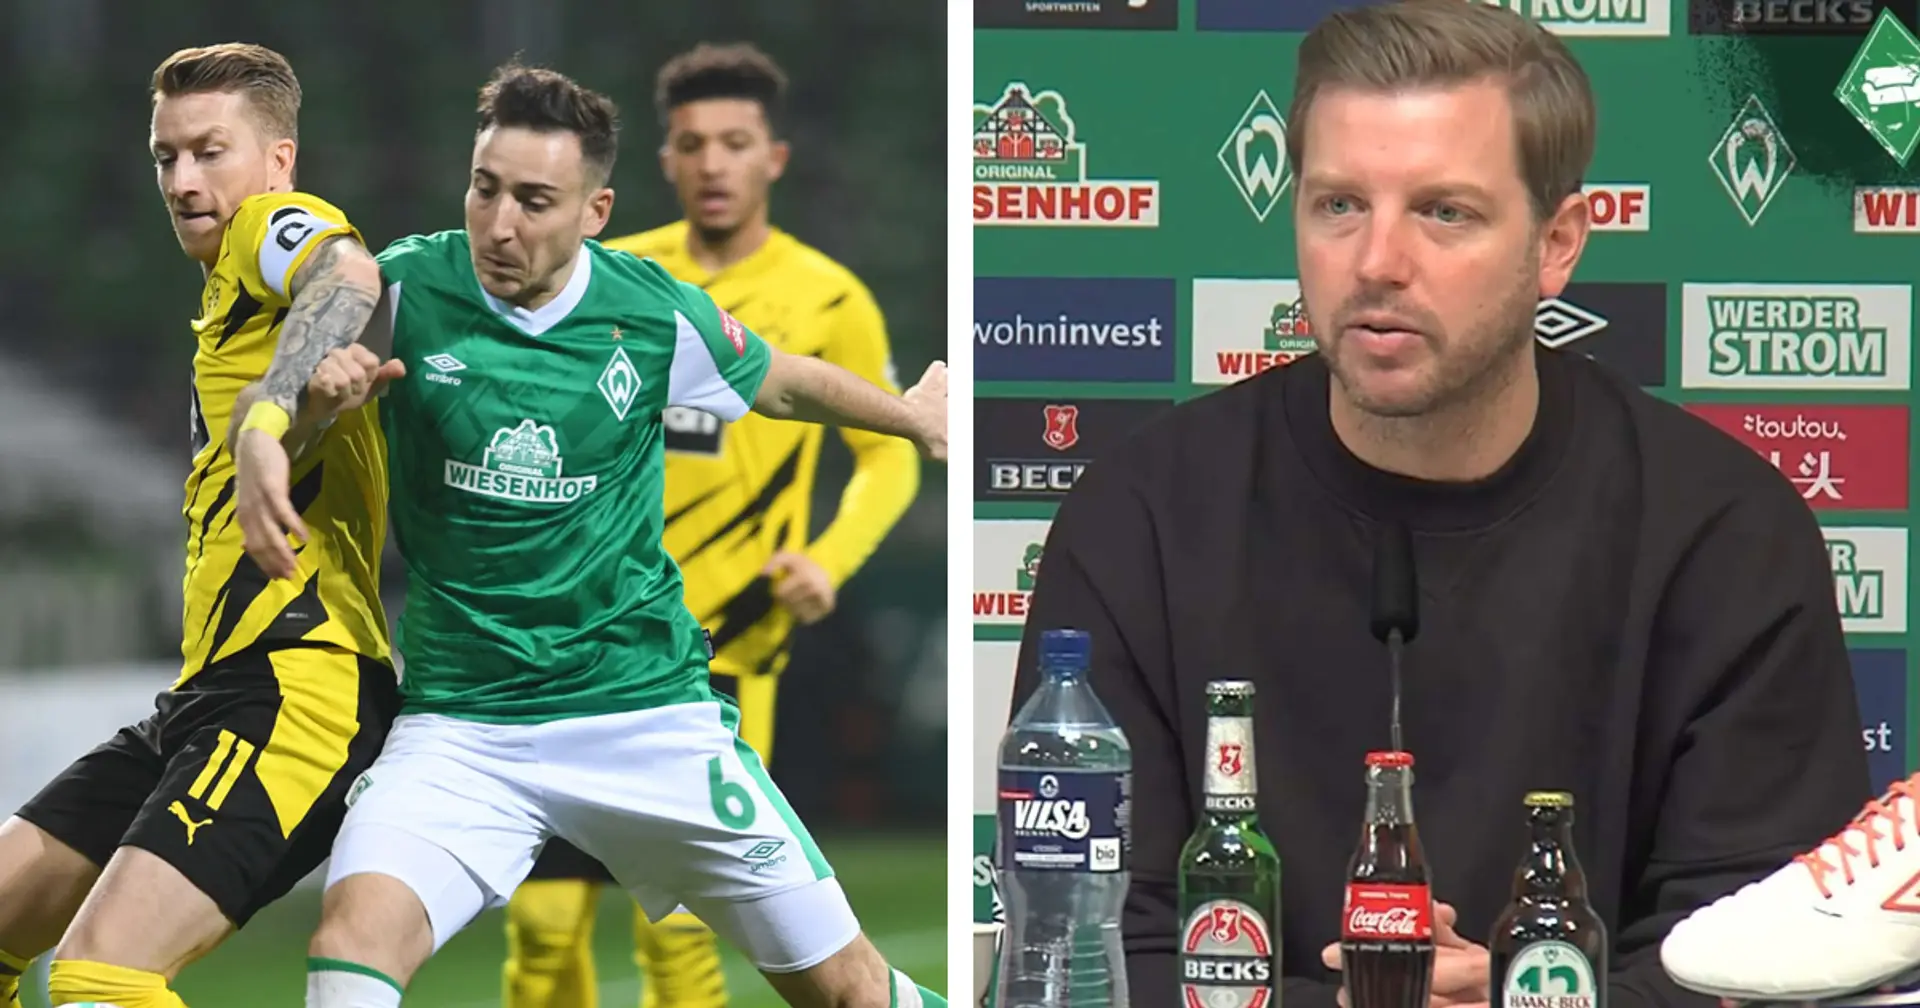 Werder-Coach Kohfeldt vor dem Spiel vs. Dortmund: "Es kann für uns eine Schlüsselwoche werden"